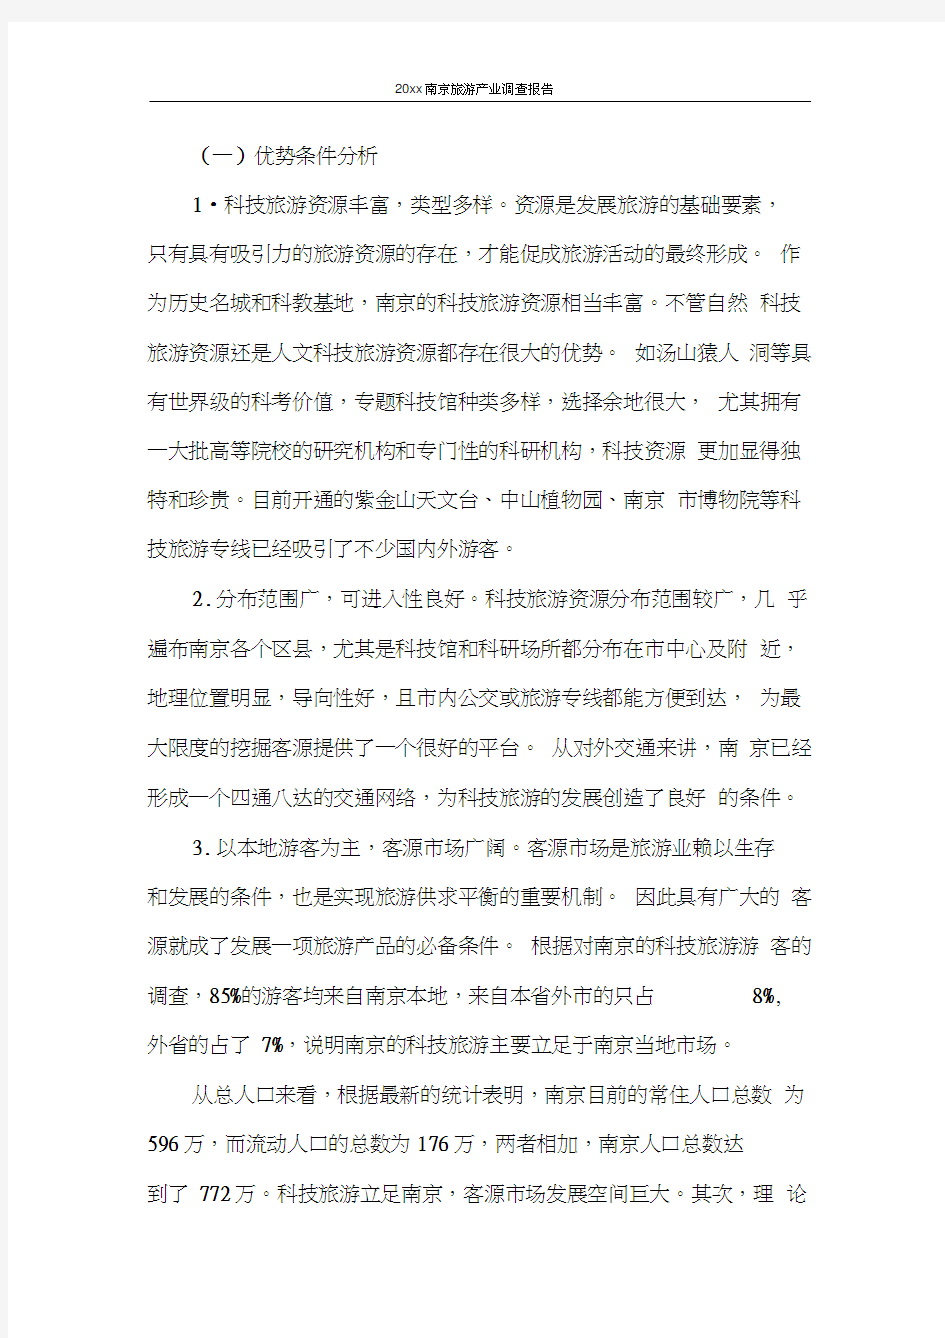 调查报告2020年南京旅游产业调查报告